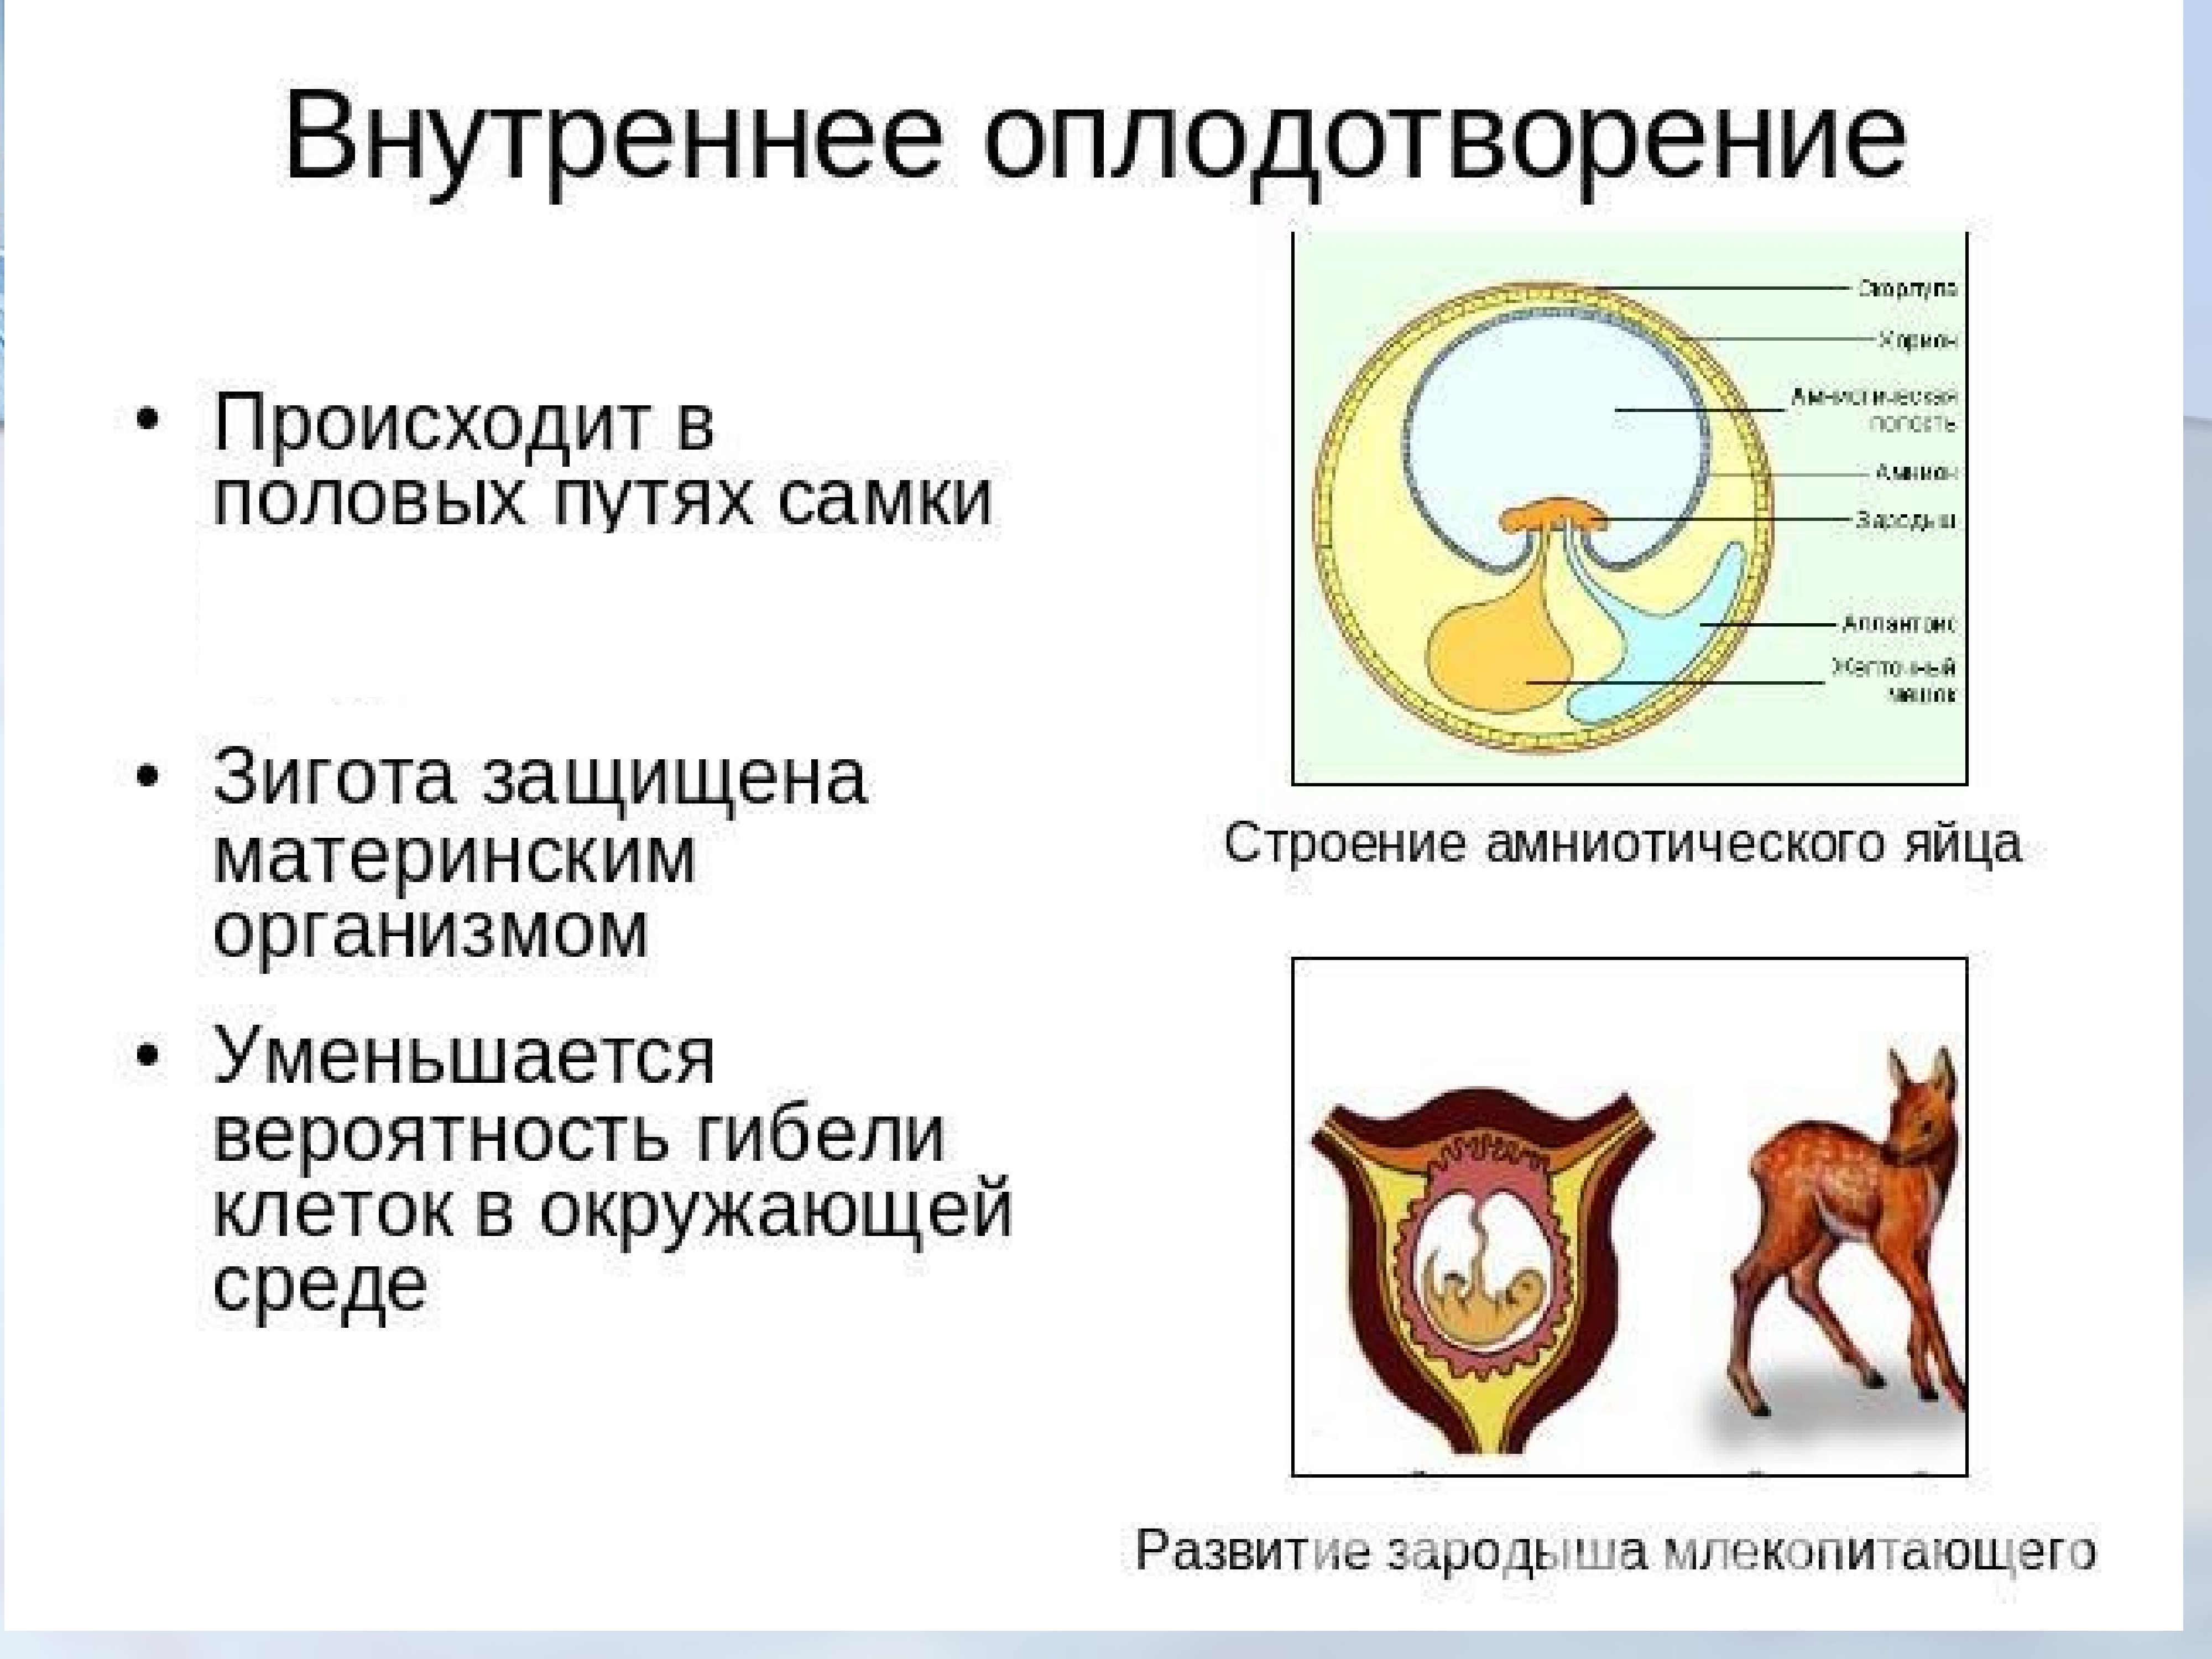 Особенности размножения человека презентация 9 класс фгос